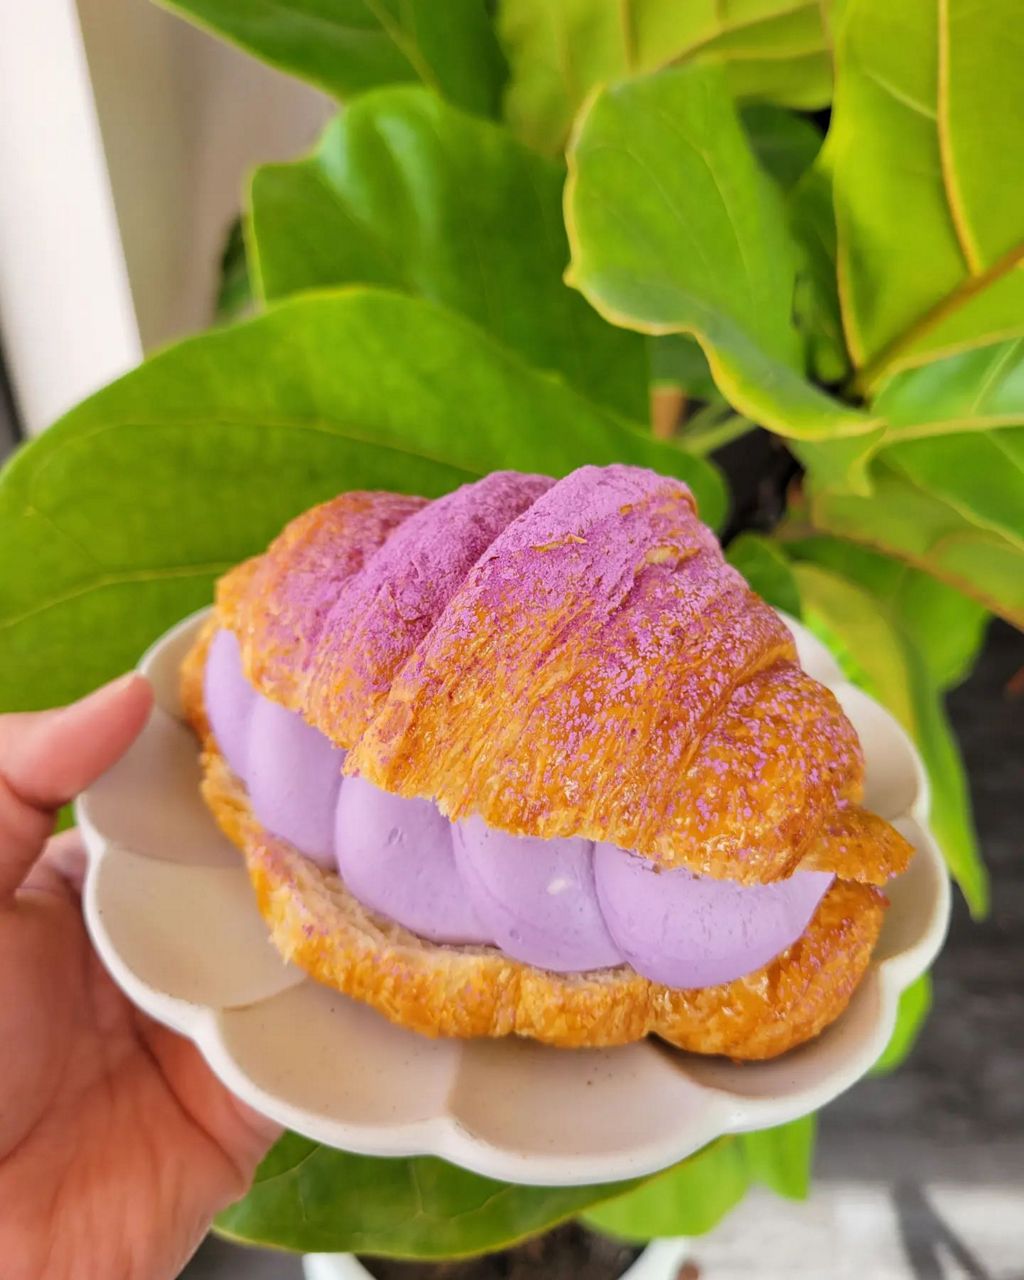 El croissant ube halaya es uno de los artículos más populares en Mochiko Cafe.  El restaurante ha ganado reconocimiento nacional desde que abrió hace dos años.  (Foto cortesía de Café Mochiko)